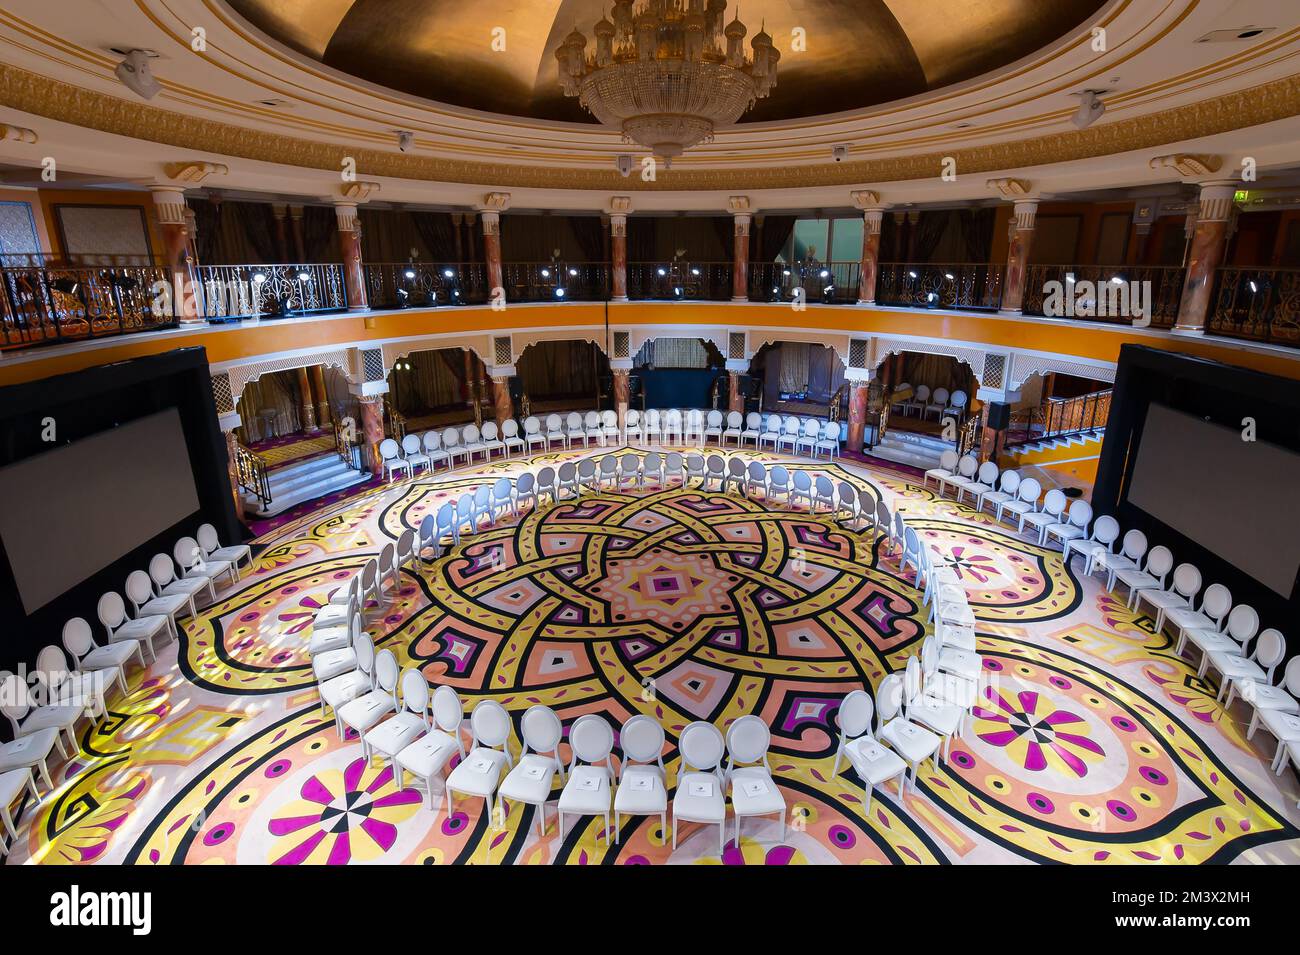 Dubaï, Émirats arabes Unis - Grande salle d'événements ronde de deux étages à l'intérieur de Burj Al Arab. Les chaises blanches forment un cercle. Intérieur d'un hôtel arabe de luxe 7 étoiles. Banque D'Images